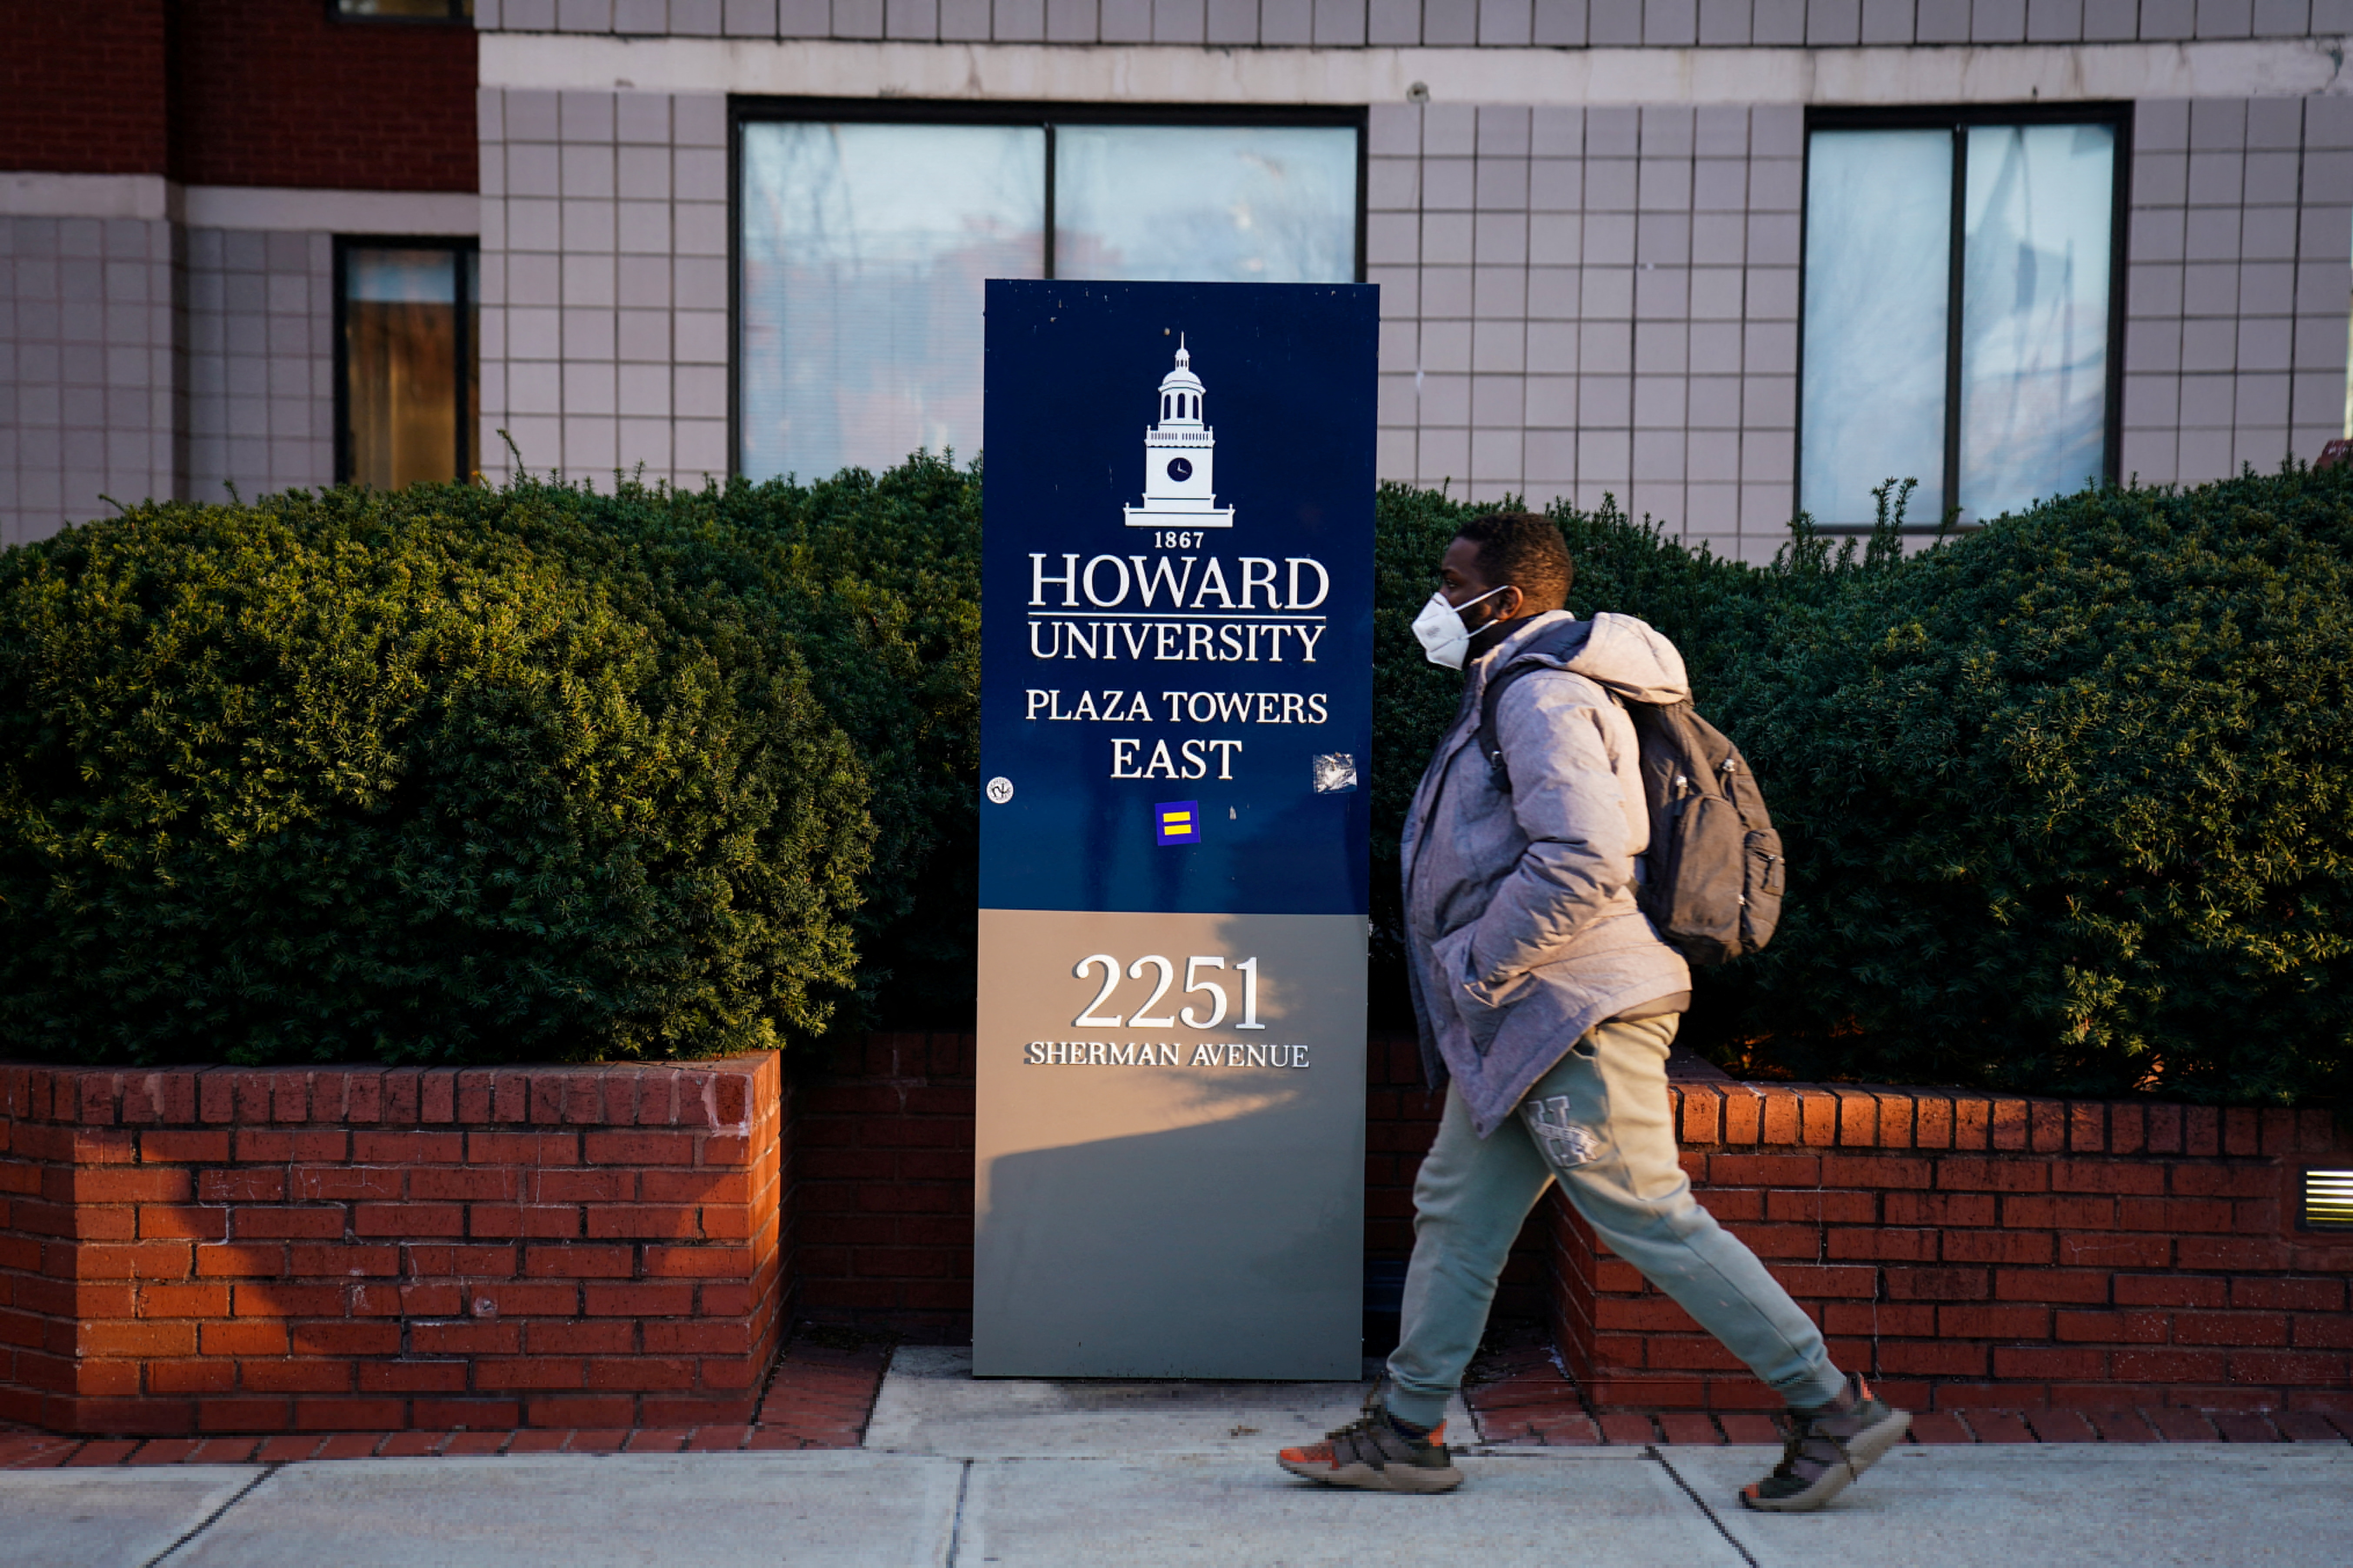 Howard University receives bomb threats in Washington